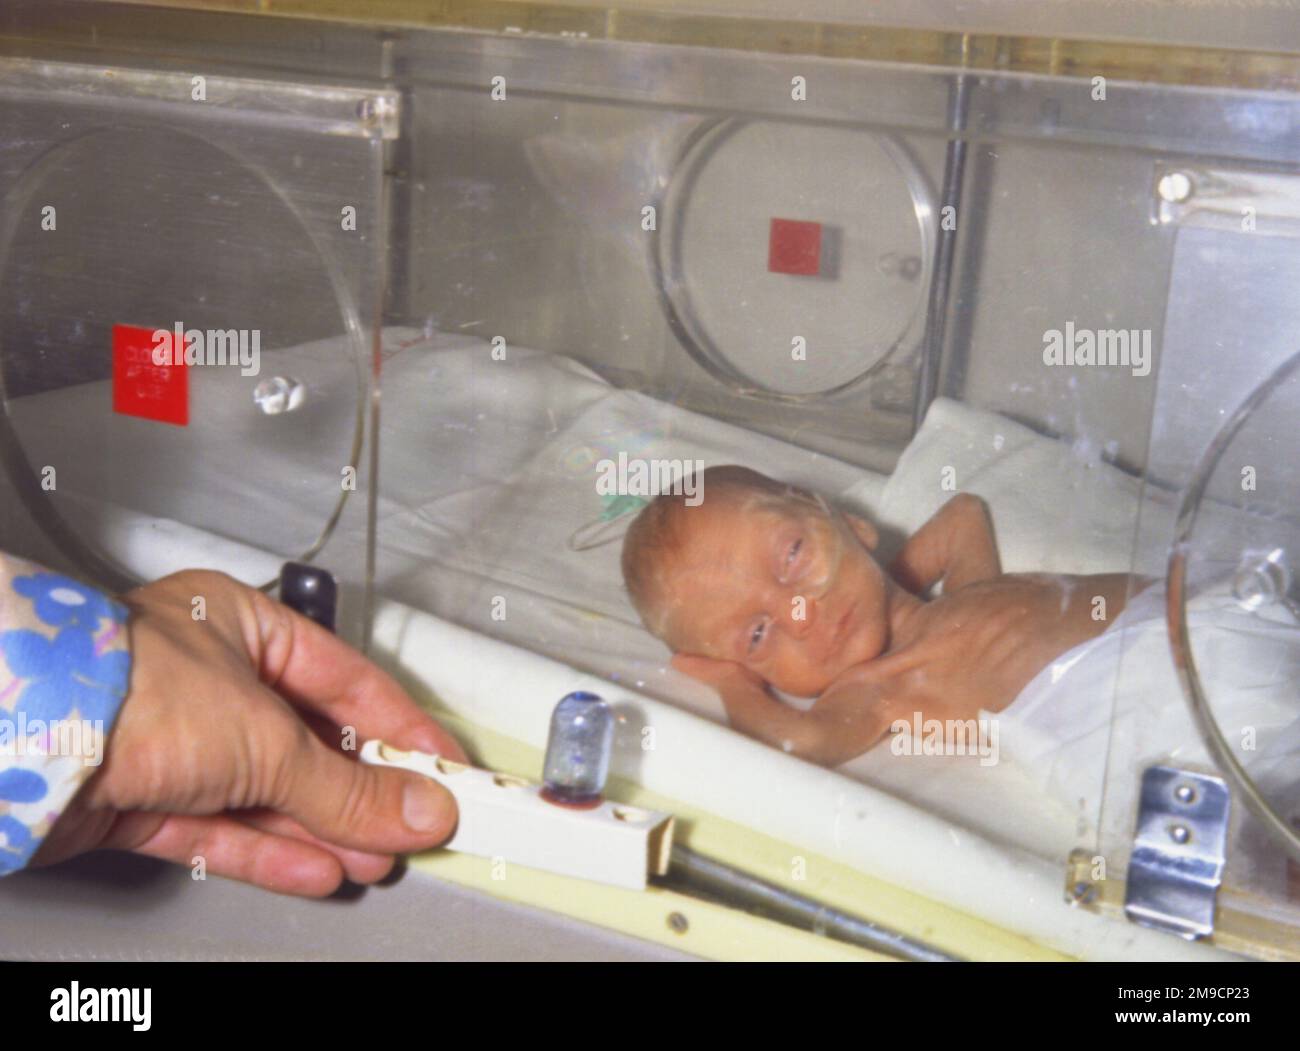 Une jeune fille prématurée dans un incubateur de l'hôpital Redhill, Surrey. Banque D'Images